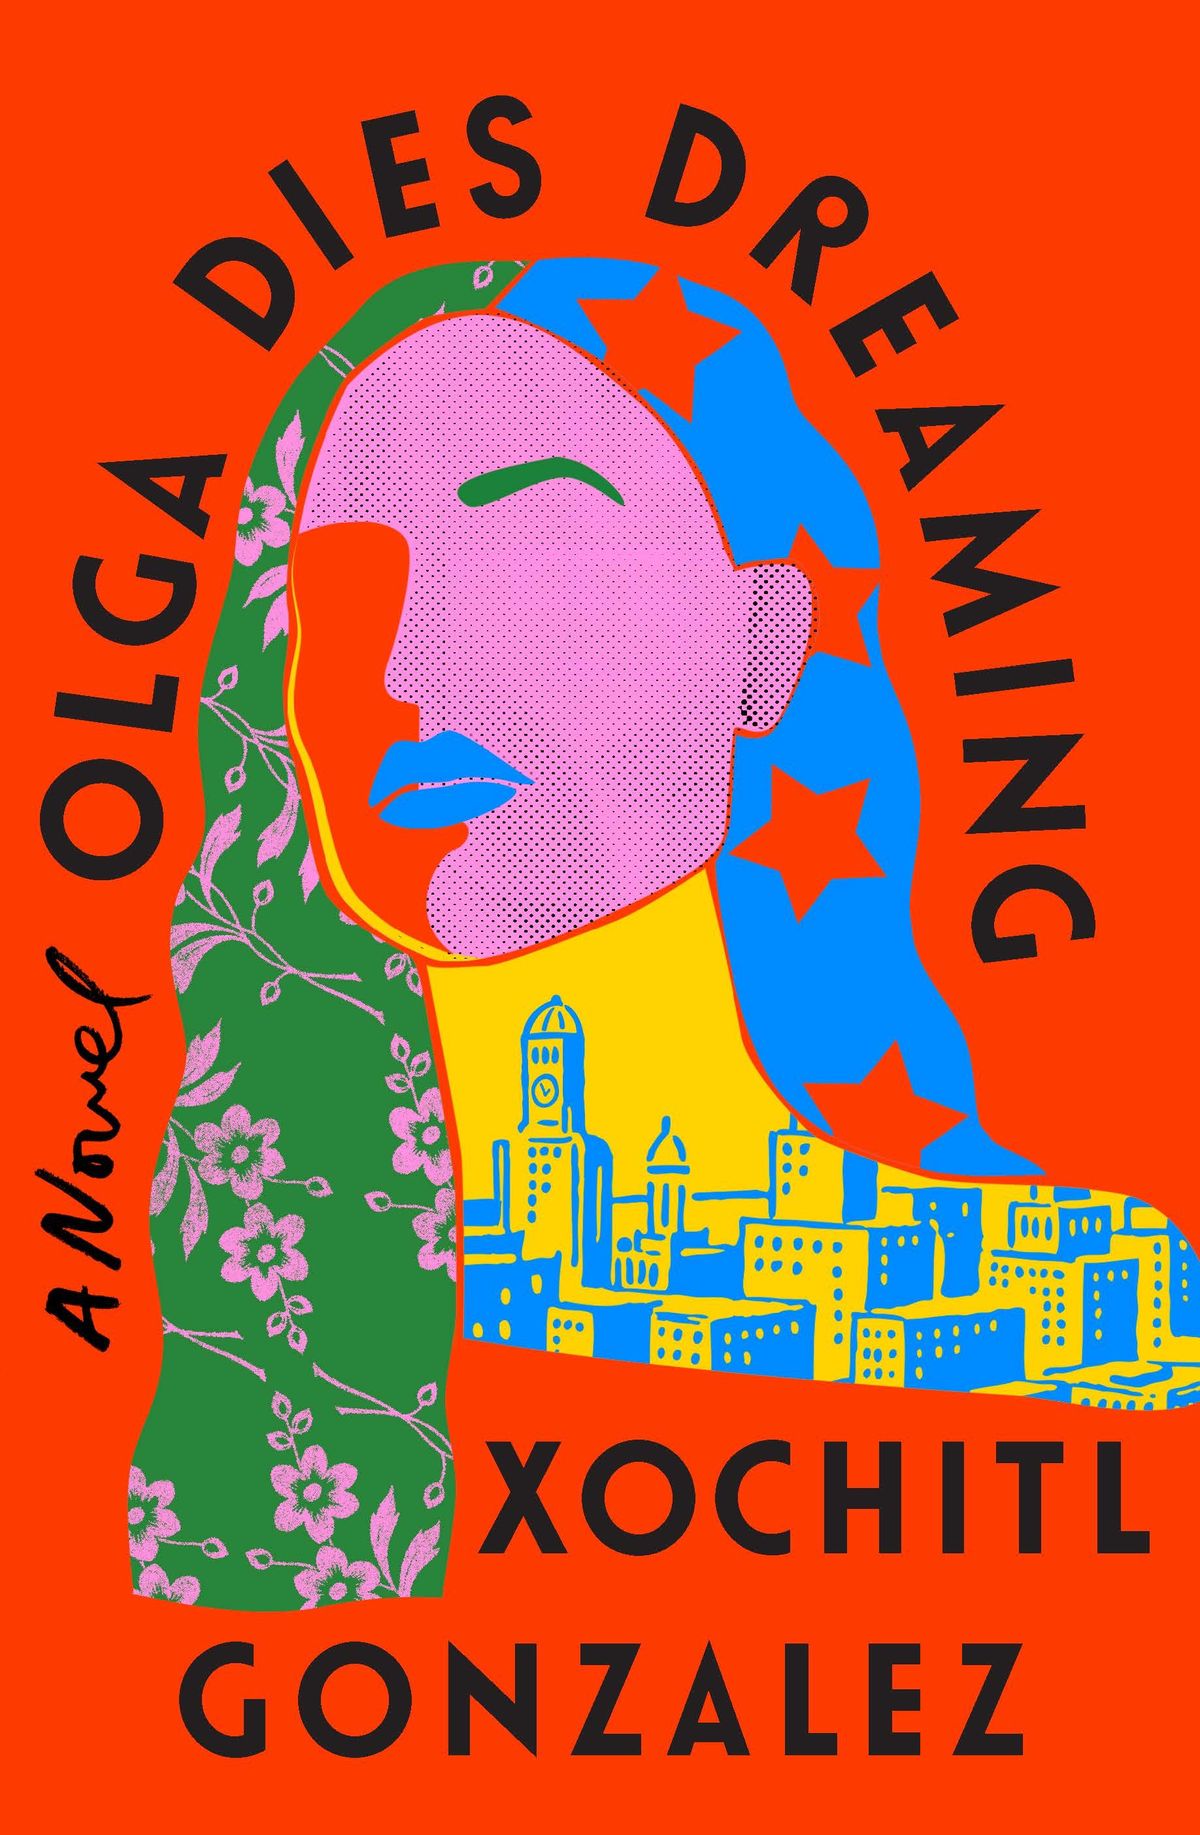 Lesen Sie die ersten Seiten von Xochitl Gonzalez’ mit Spannung erwartetem Debüt, Olga stirbt träumend